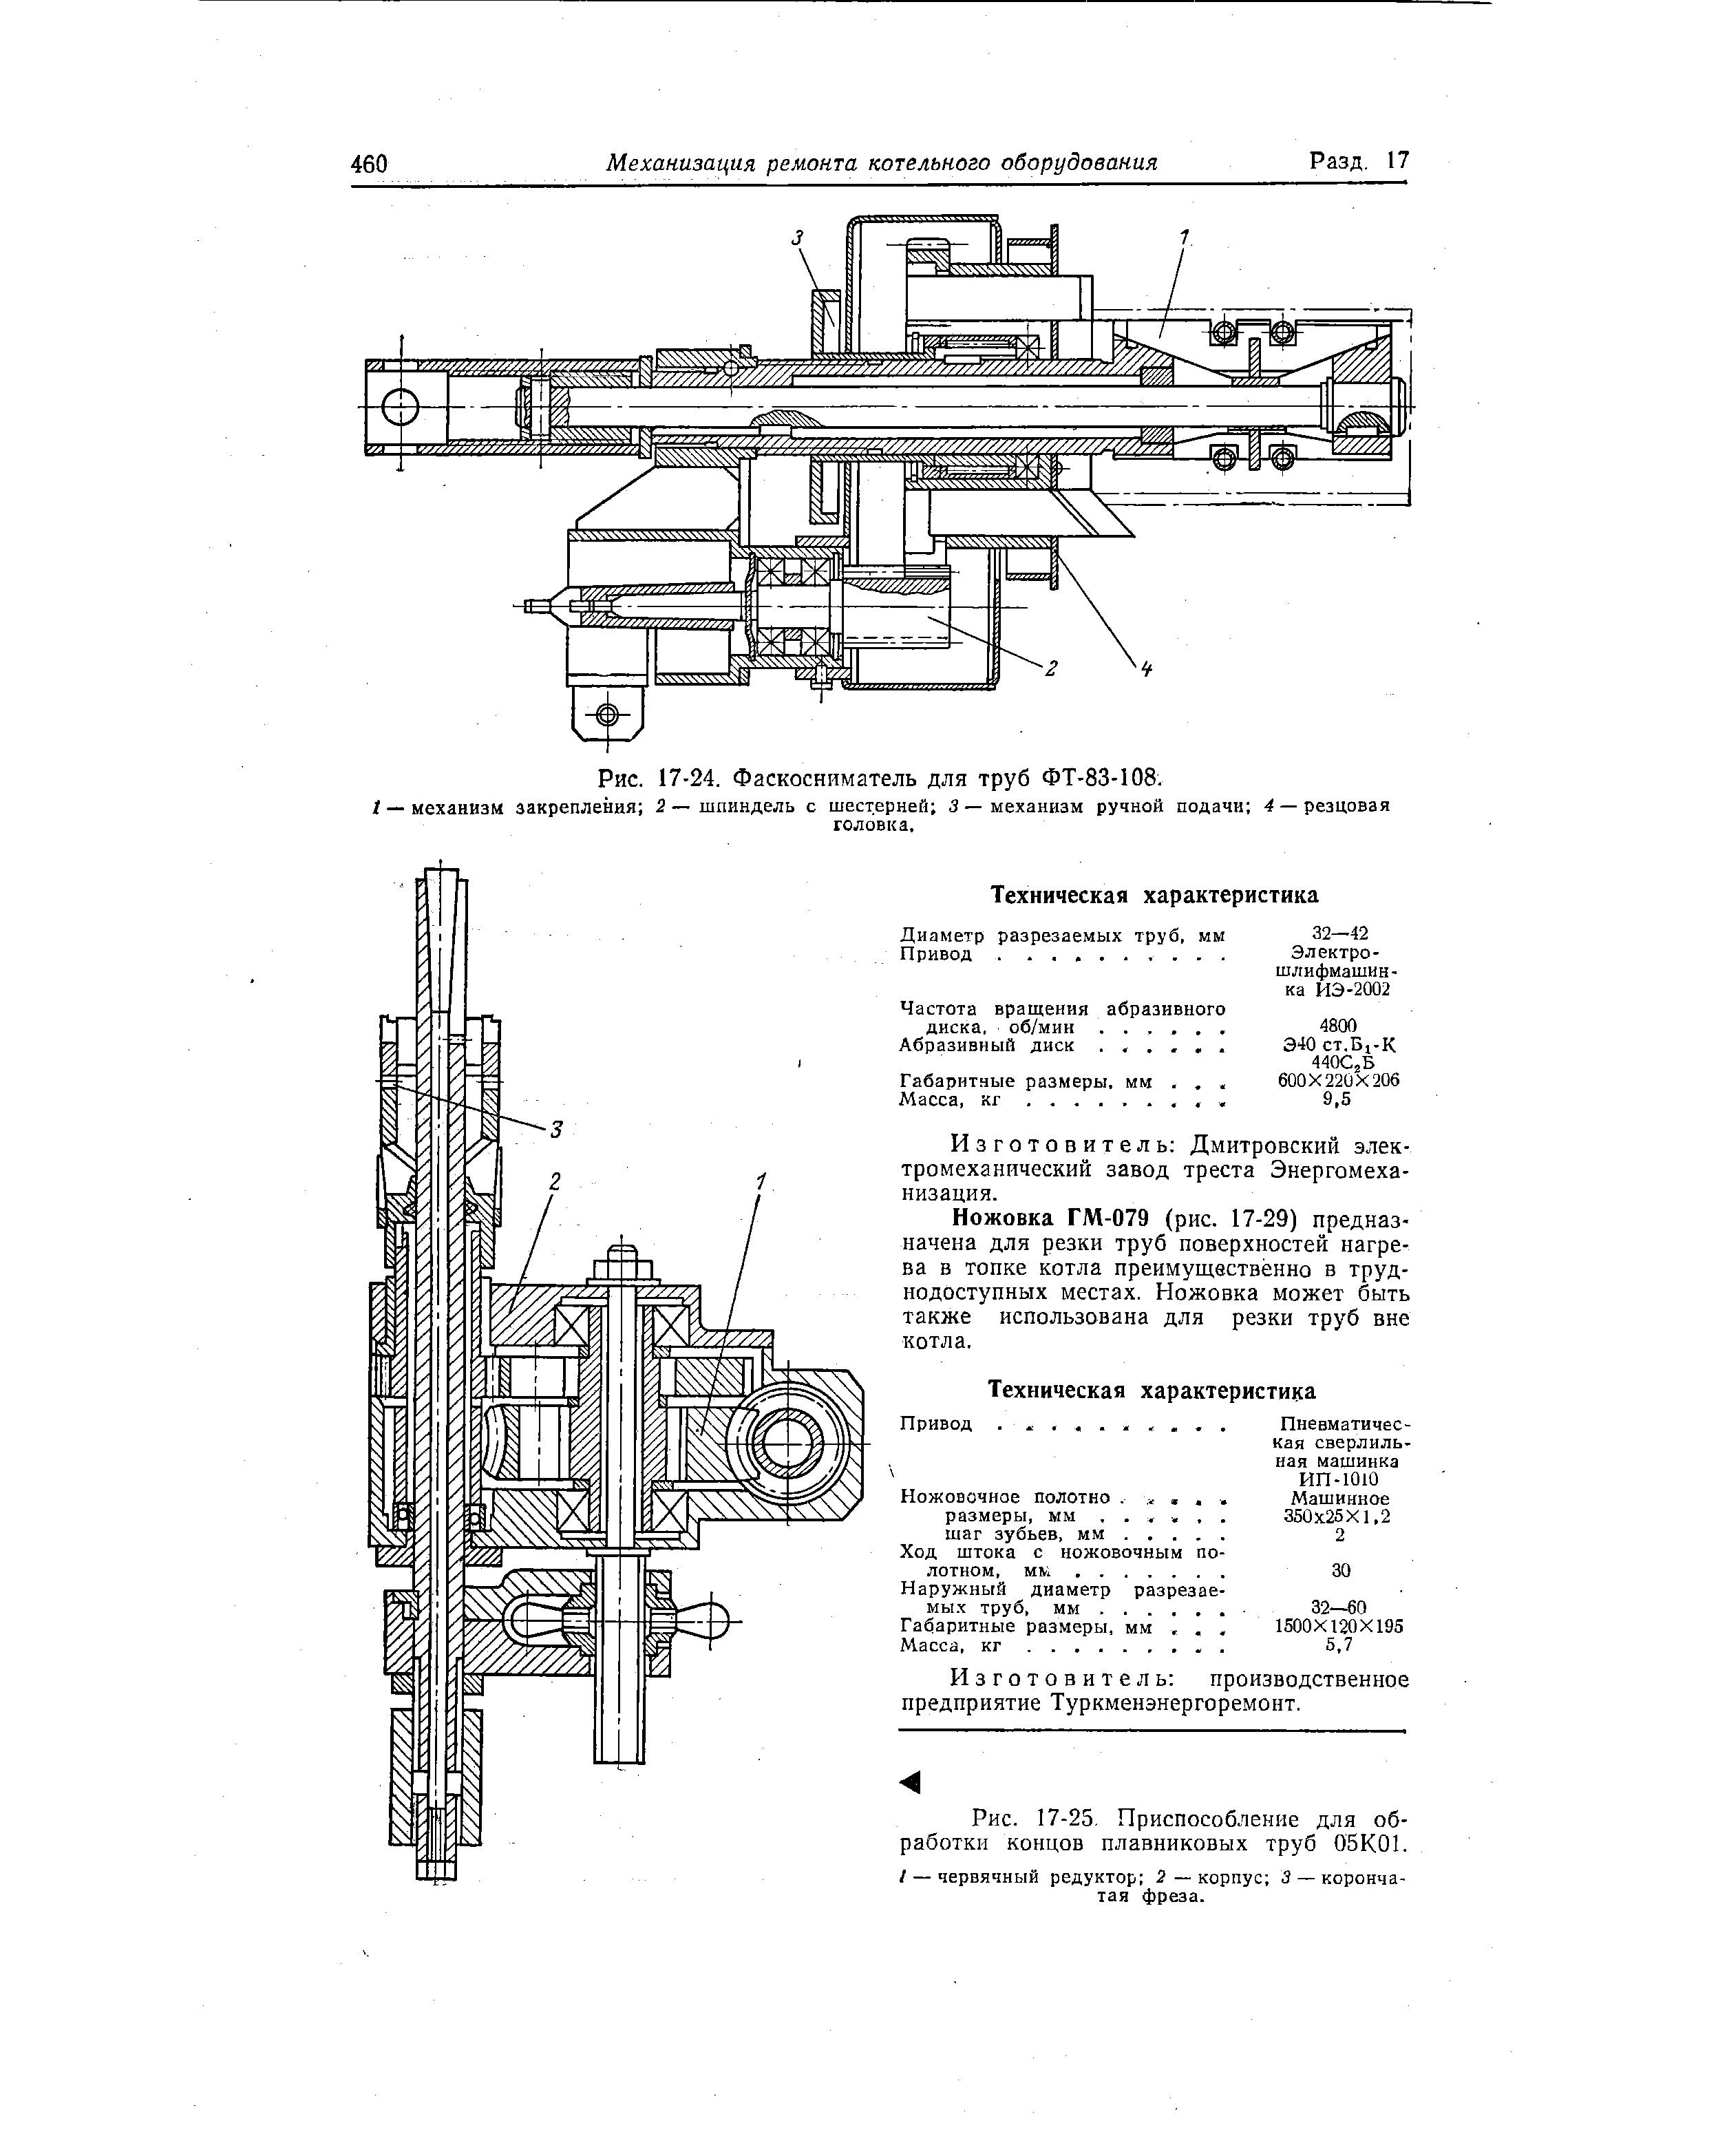 Рис. 17-25. Приспособление для обработки концов плавниковых труб 05К01.
